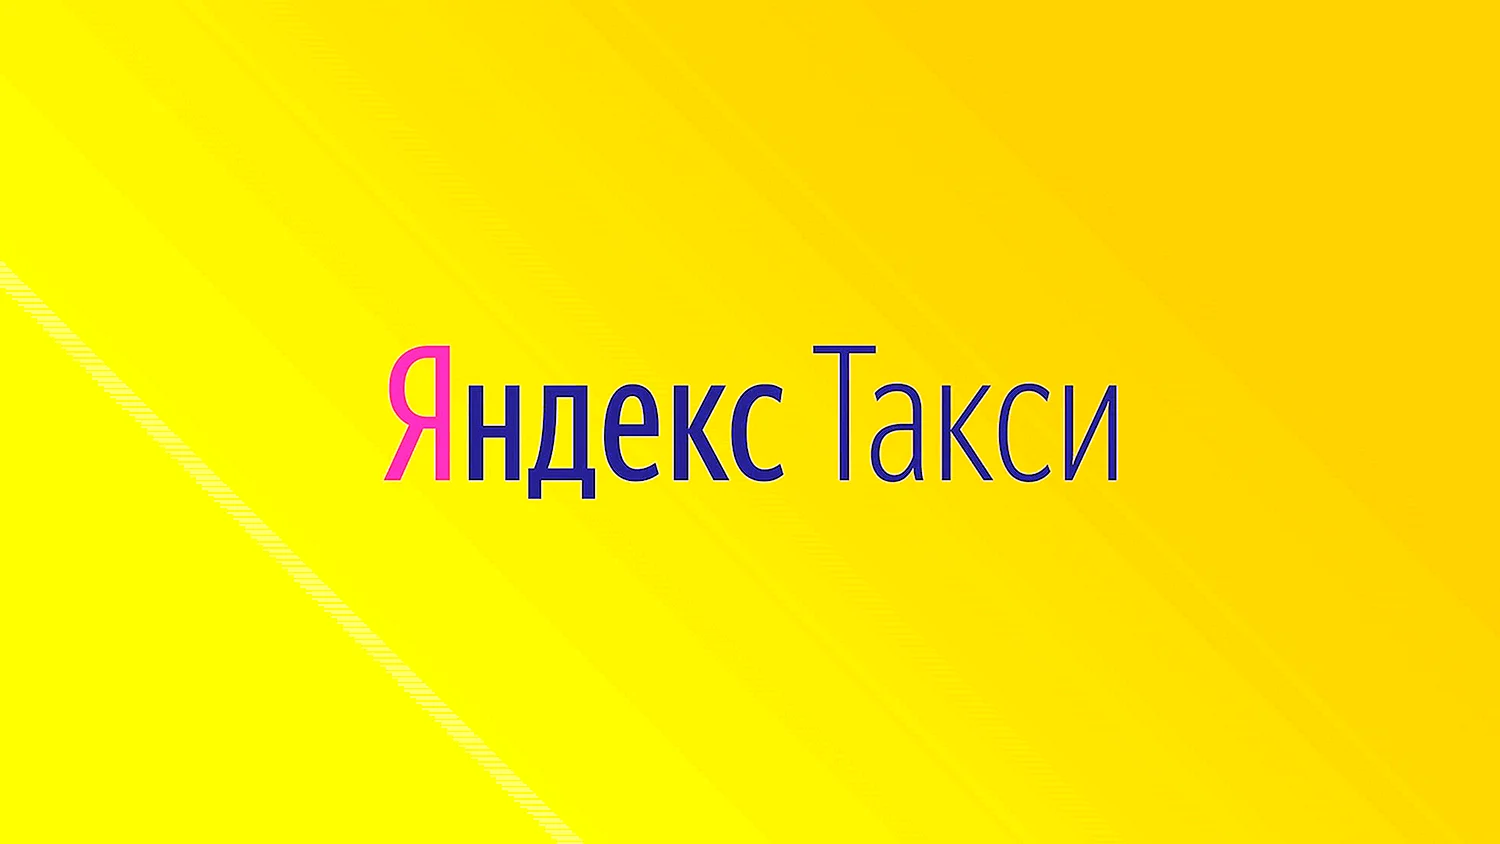 Яндекс такси лого